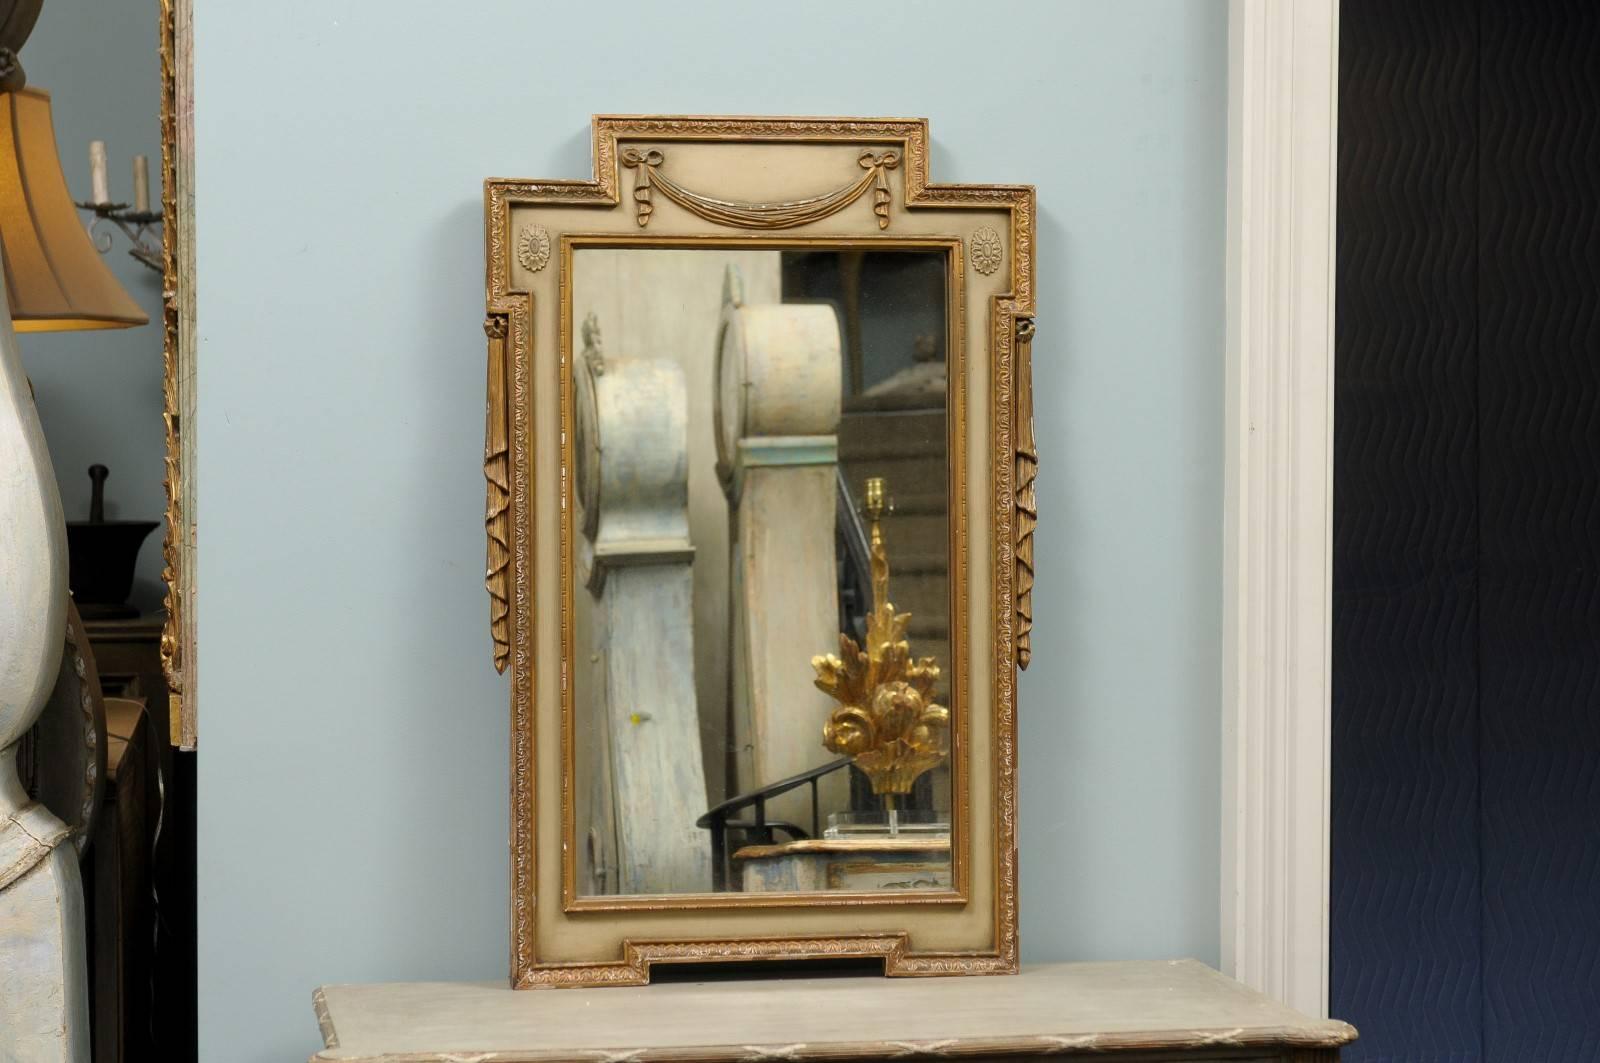 Une paire de miroirs suédois peints et dorés du début du 20e siècle. Cette paire de miroirs suédois présente un profil plutôt linéaire adouci par les motifs en tissu plié de chaque côté. Le cimier est décoré d'un délicat motif de houlette avec des